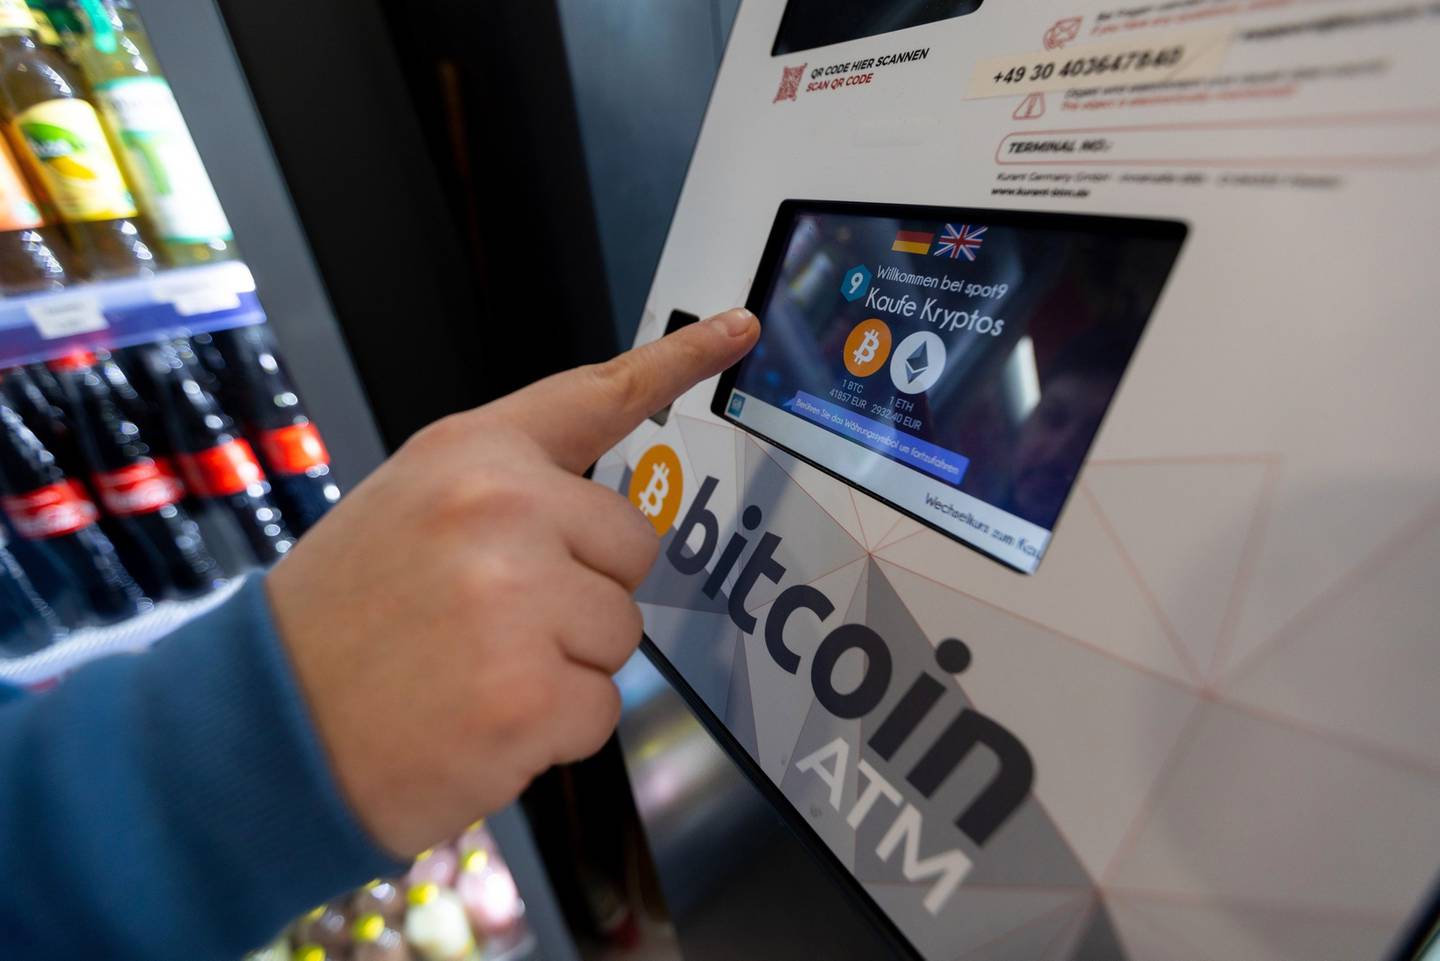 Un cajero automático (ATM) de Bitcoin en uso, dispuesto dentro de una tienda.